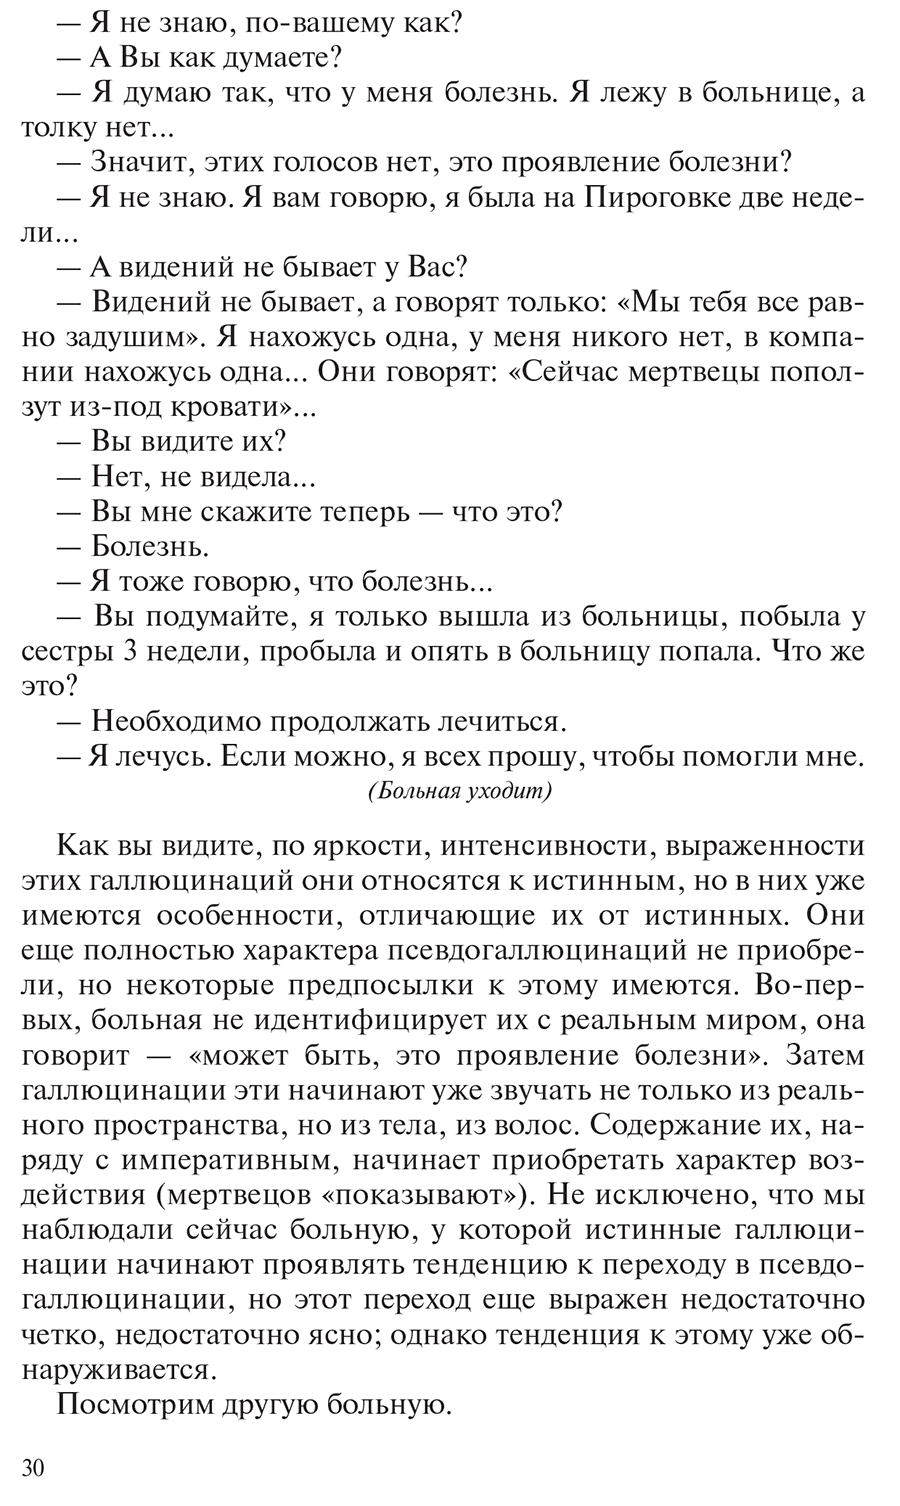 Пример страницы из книги "Общая психопатология" - Снежневский А. В.